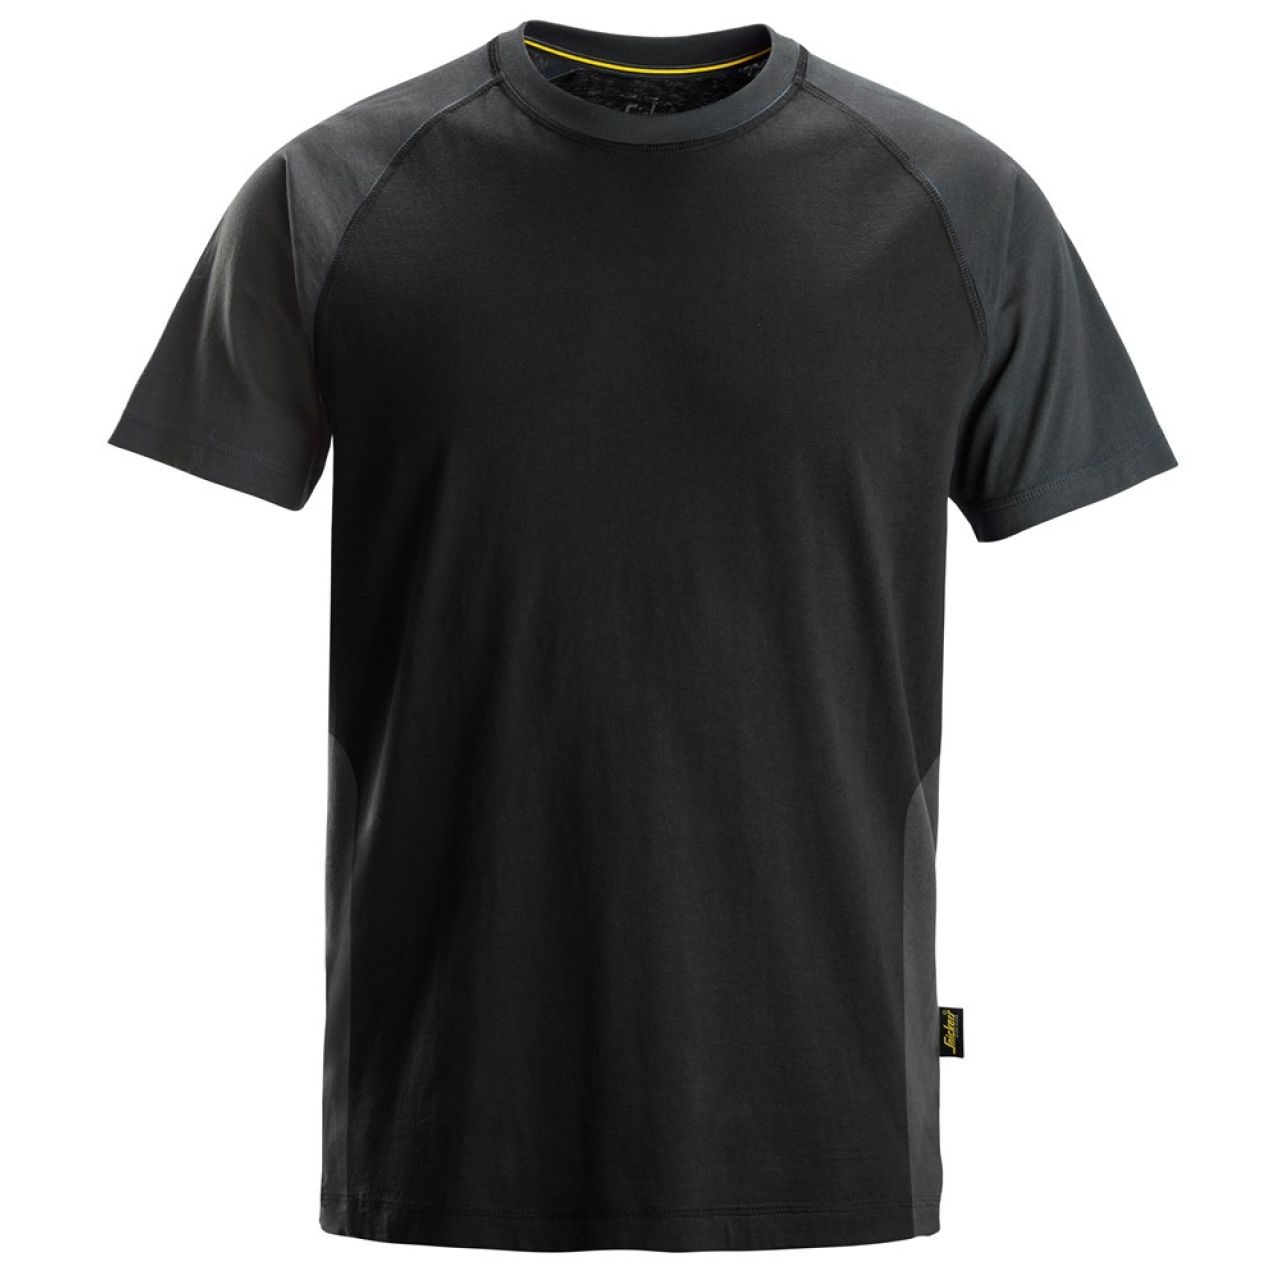 2550 Camiseta de manga corta bicolor negro-gris acero talla S